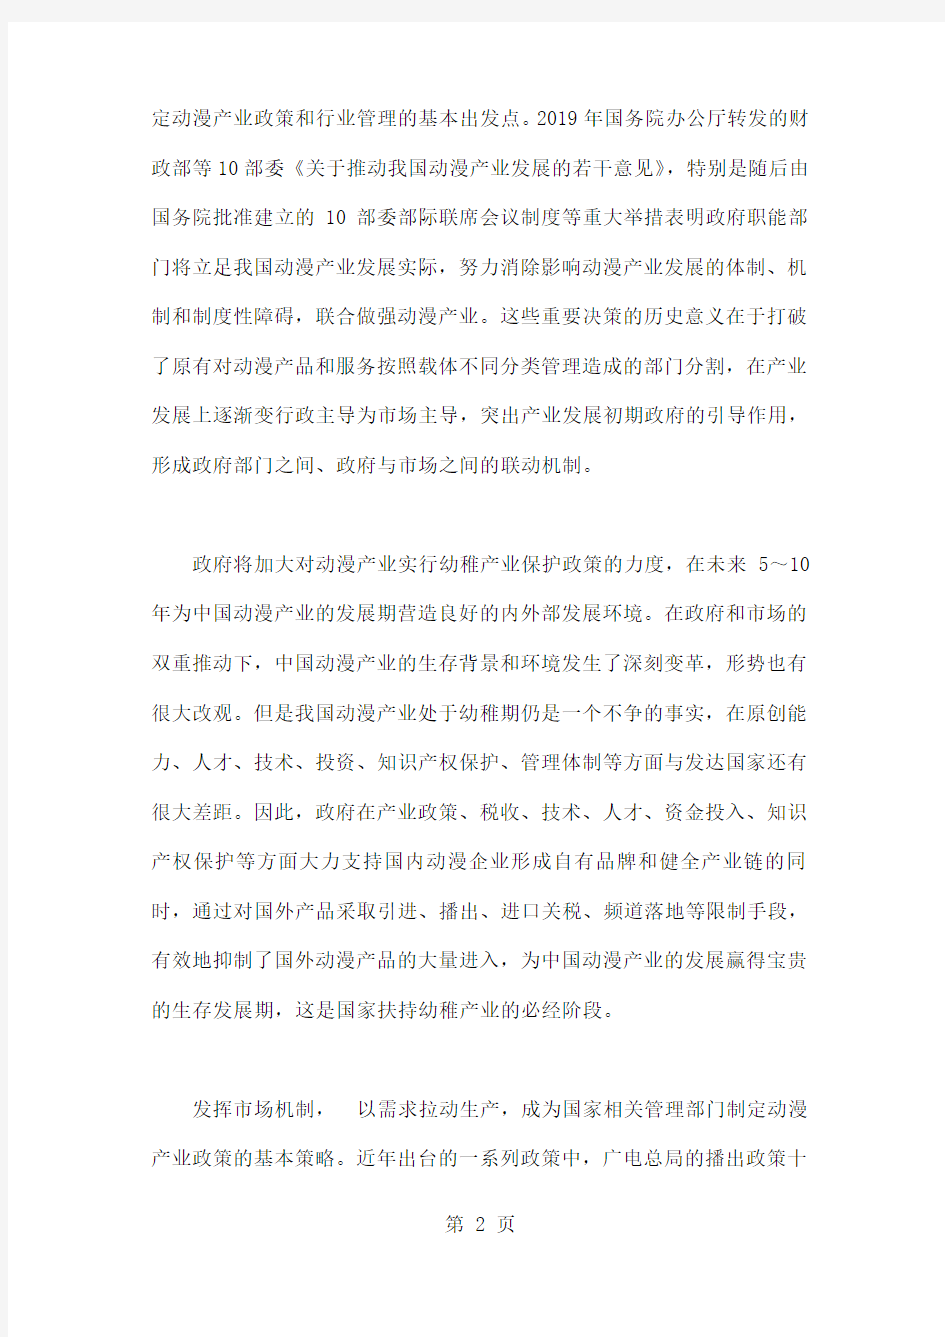 中国动漫产业政策的实施效果与展望13页word文档